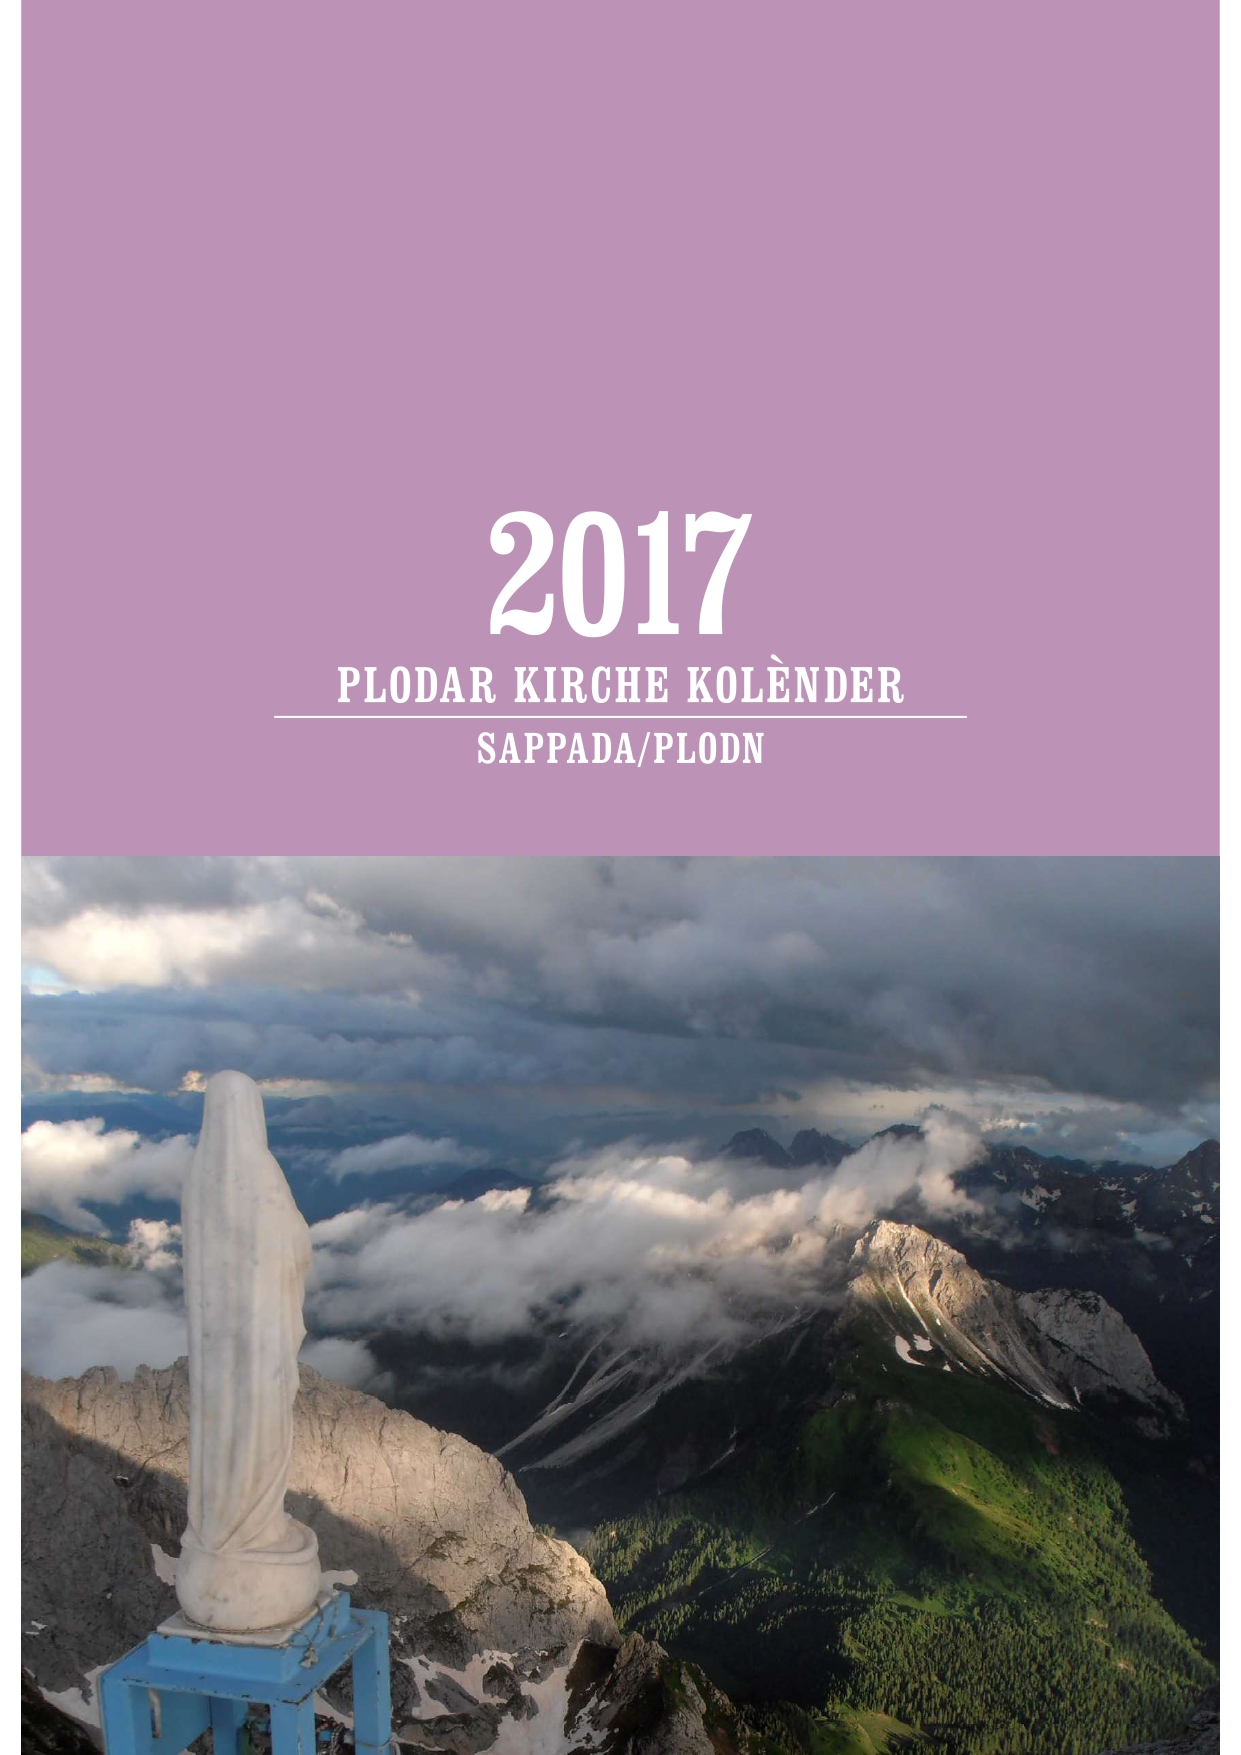 Plodar-kirche-kolender-2017